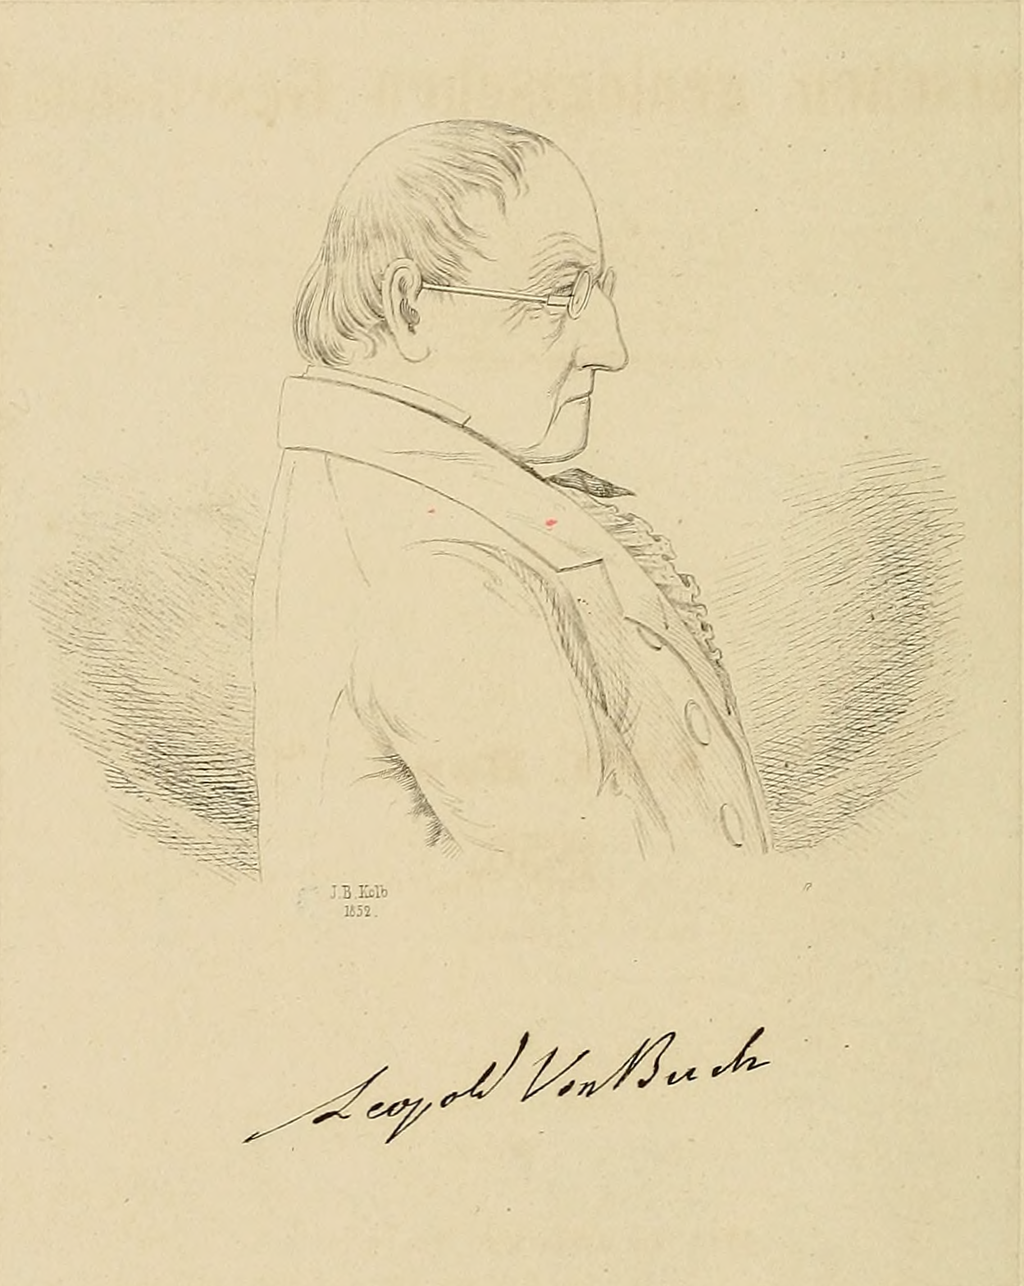 Portrait of Leopold von Buch in: Zeitschrift der deutschen geologischen Gesellschaft, vol. 8(1856). American Museum of Natural History Library, reproduced in Internet Archive.